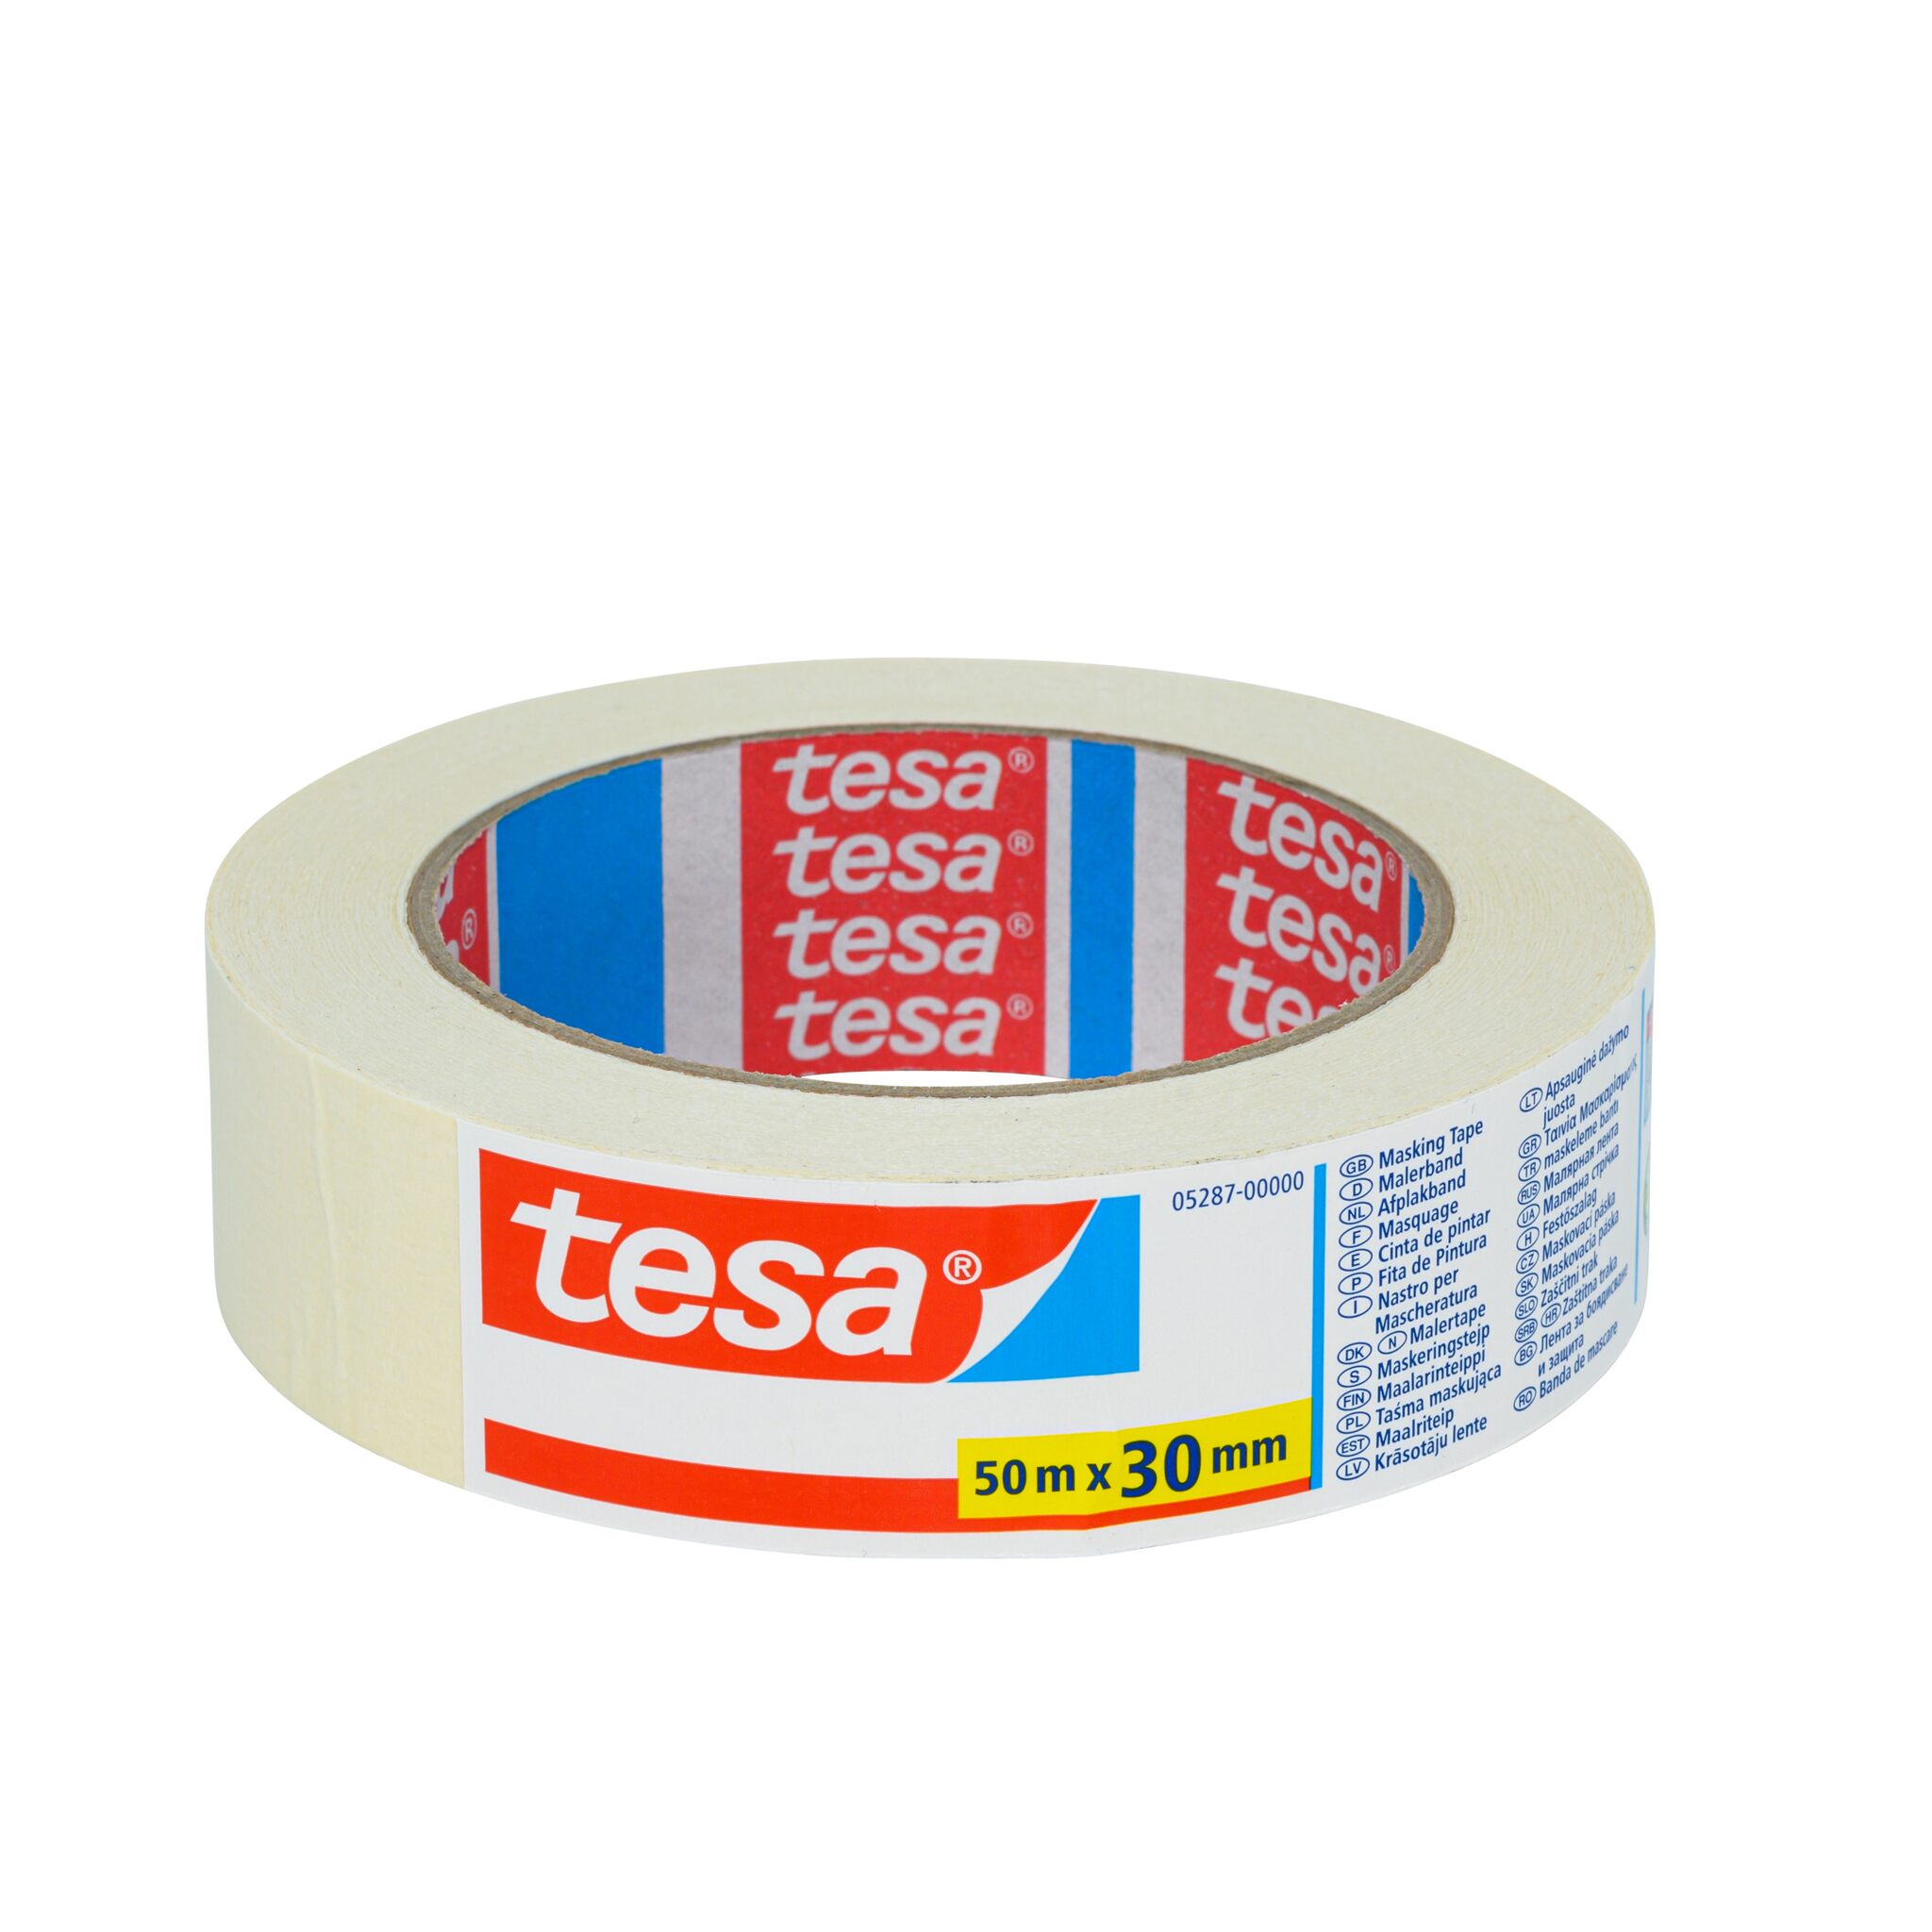 tesa painter's masking tape